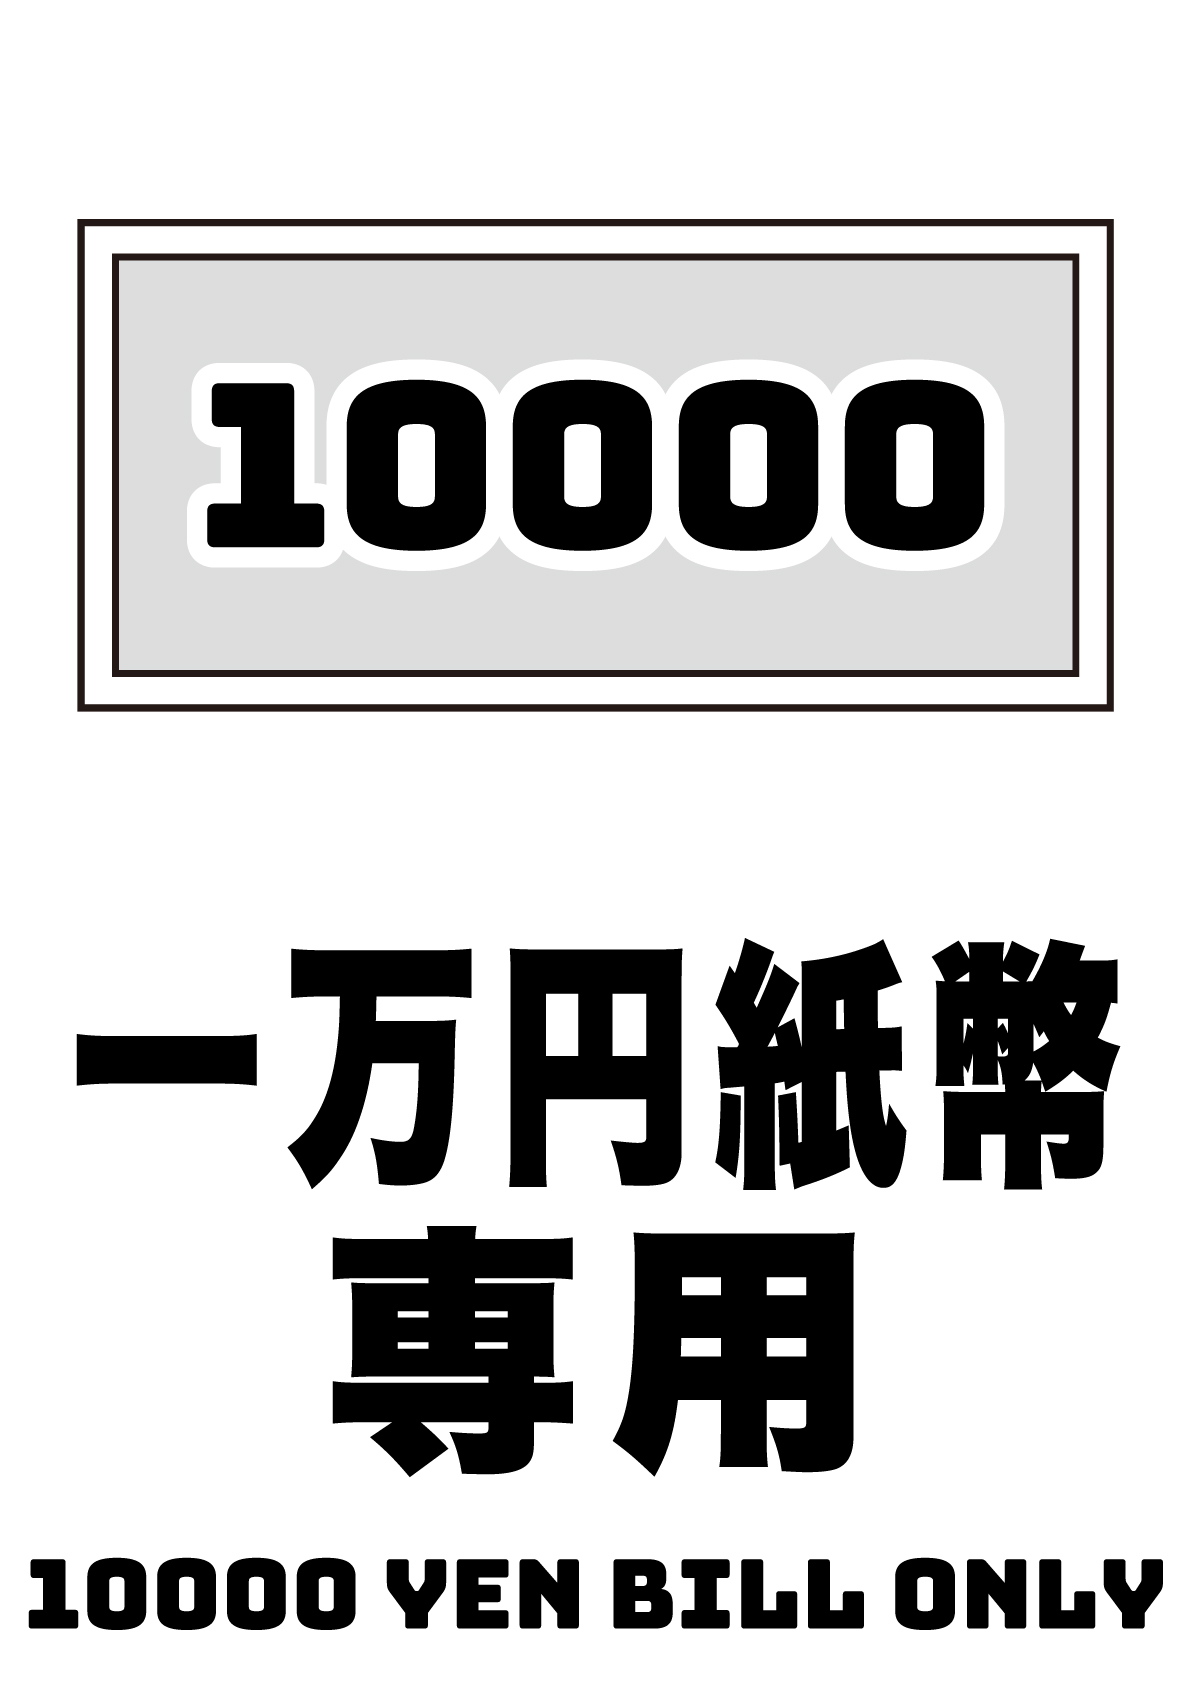 一万円札専用の張り紙